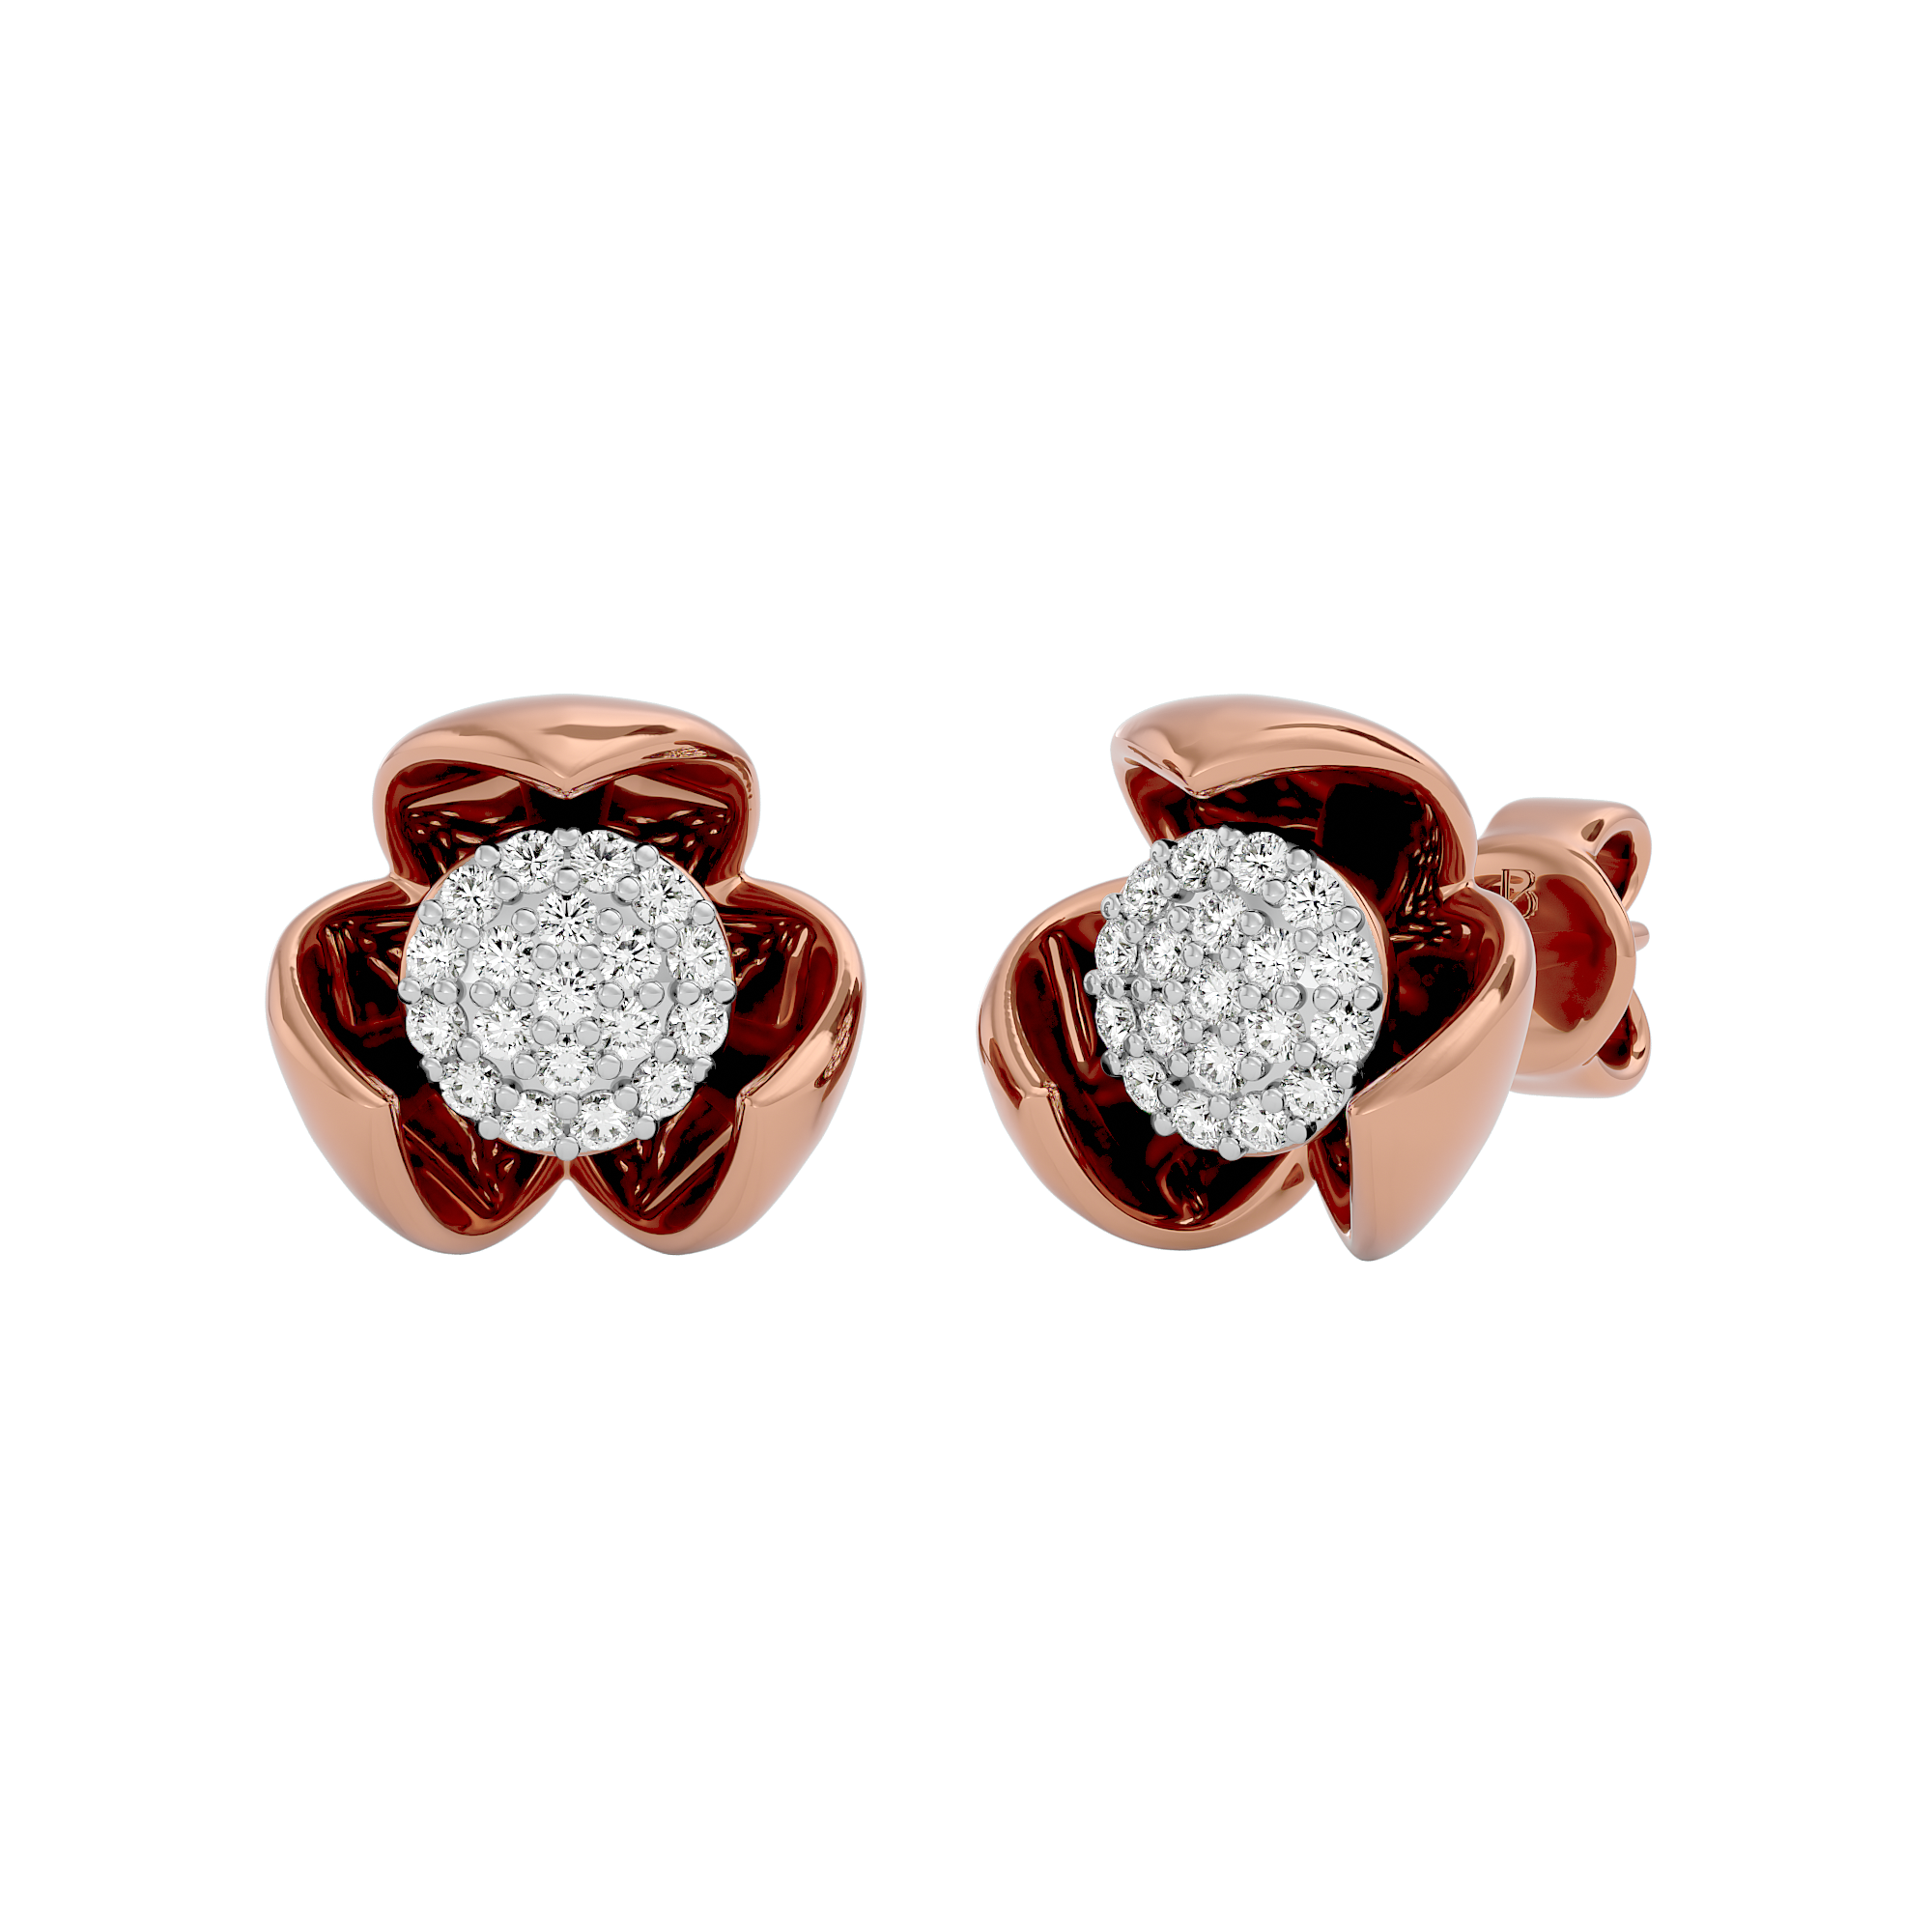 Divinely Elegant Lab Grown Diamond Earrings